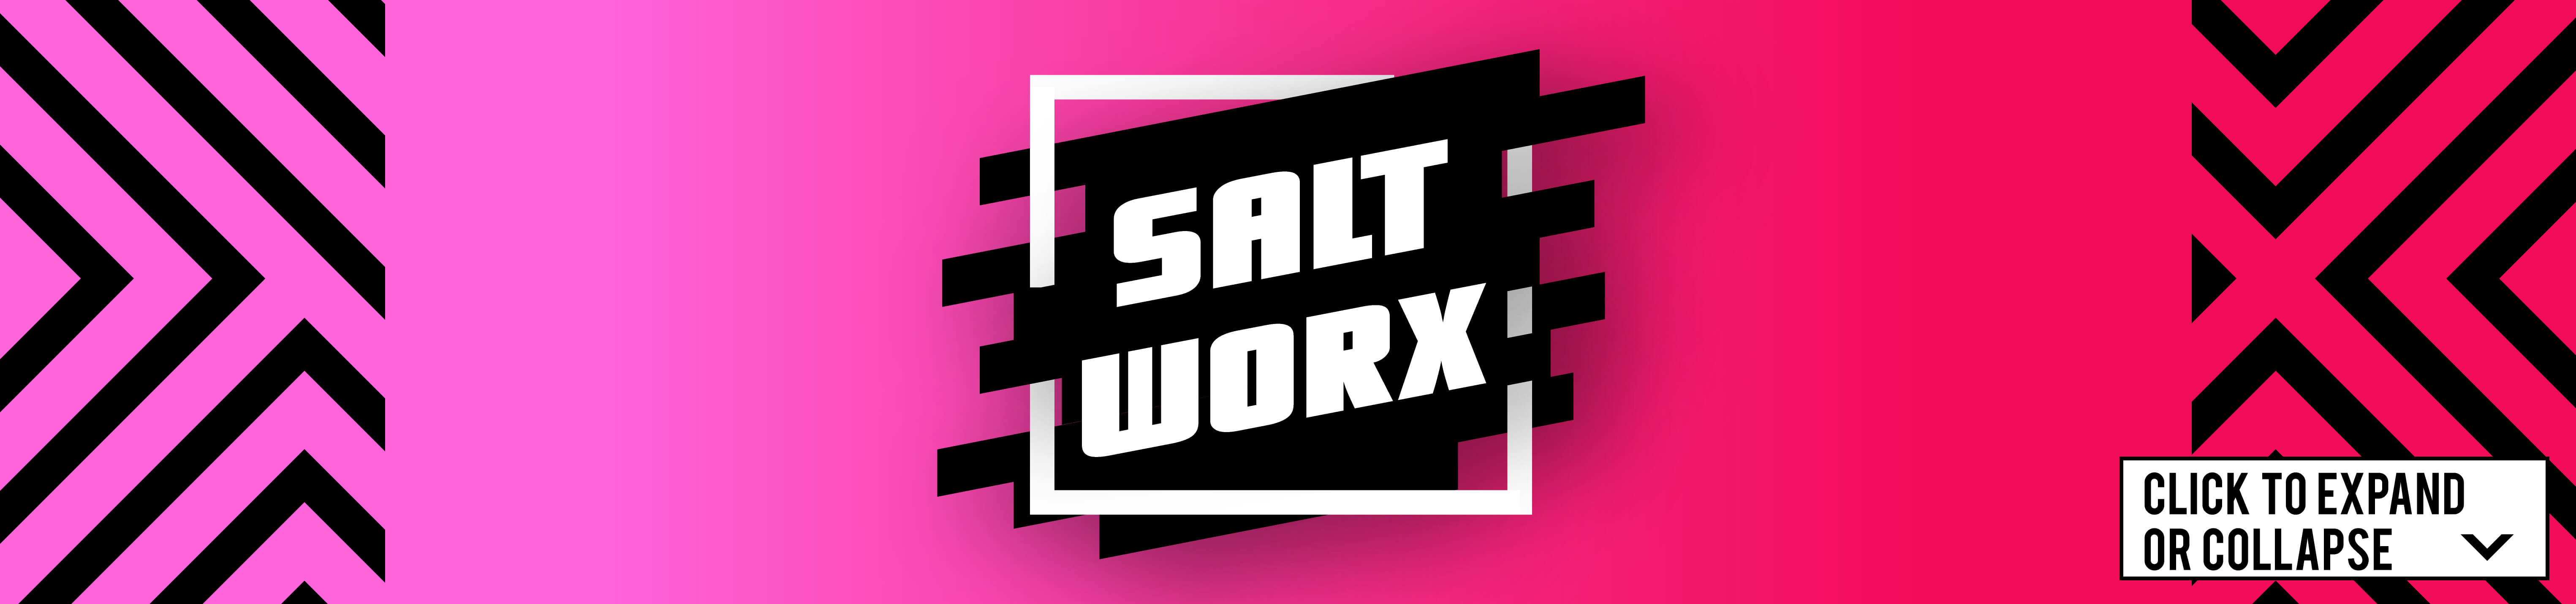 Salt Worx Hybrid